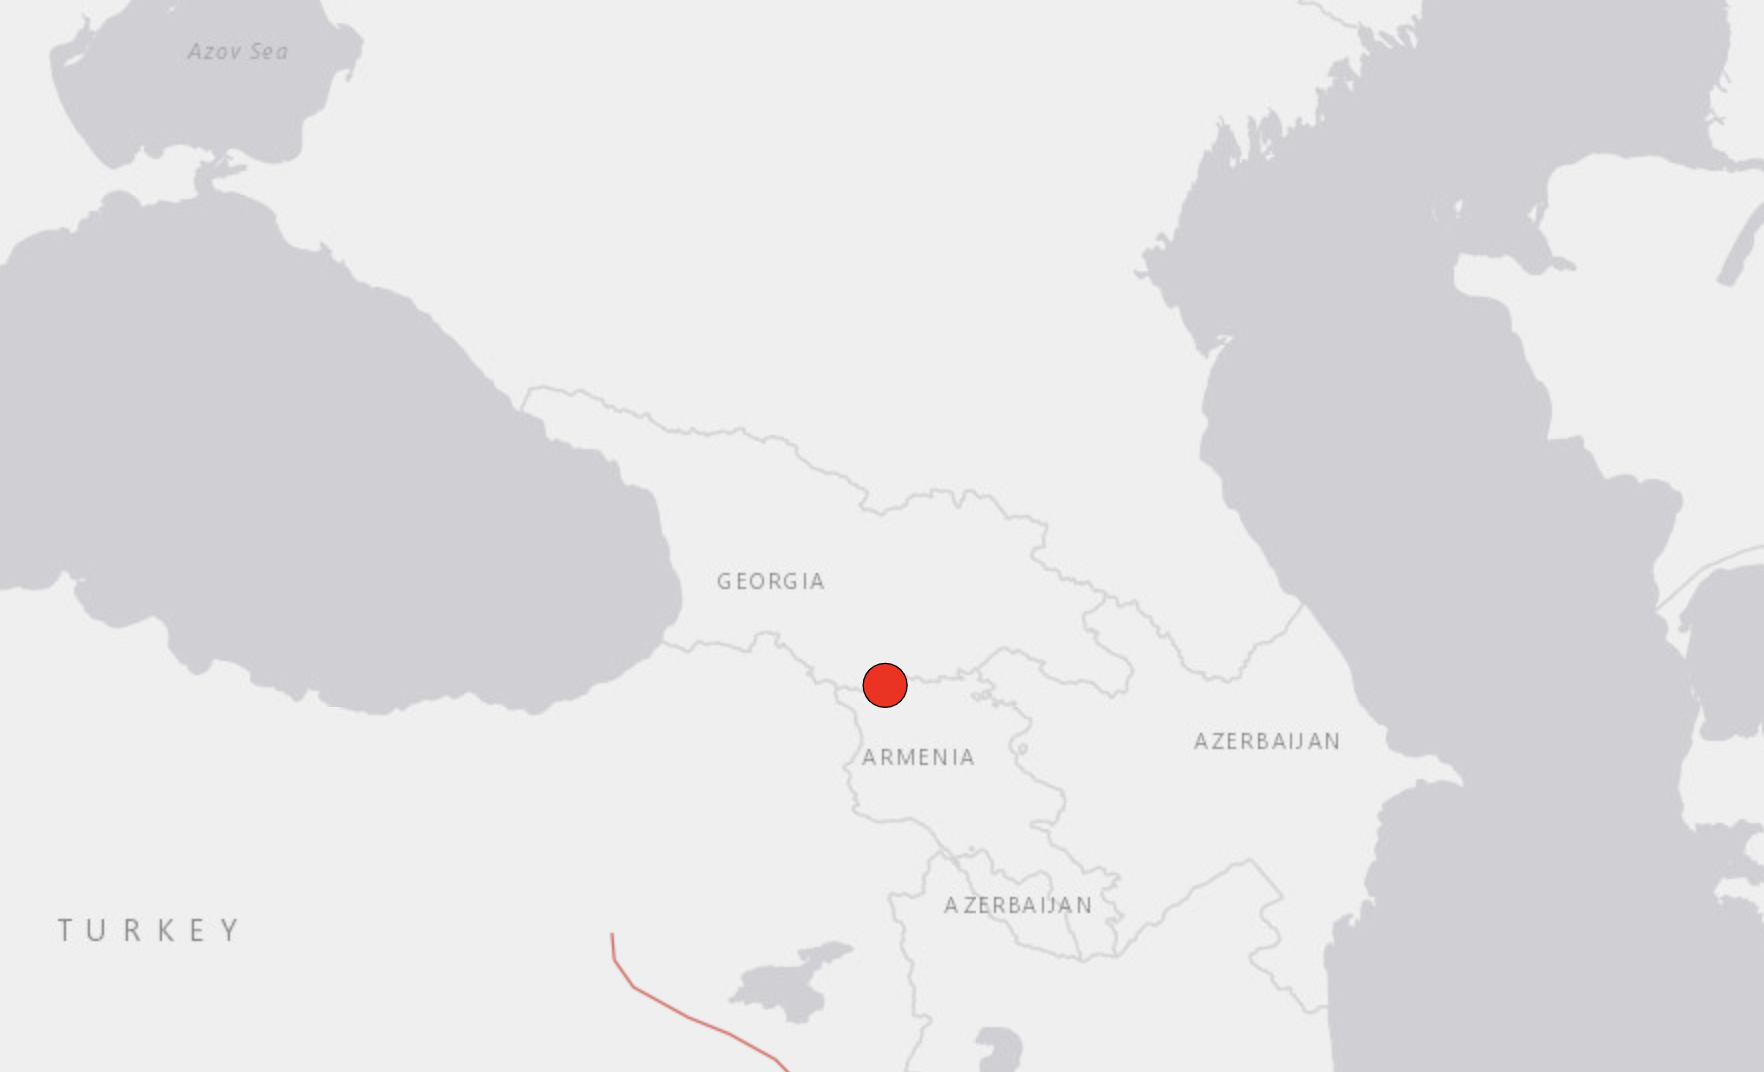 Earthquake with an epicenter on Georgian / Armenian border